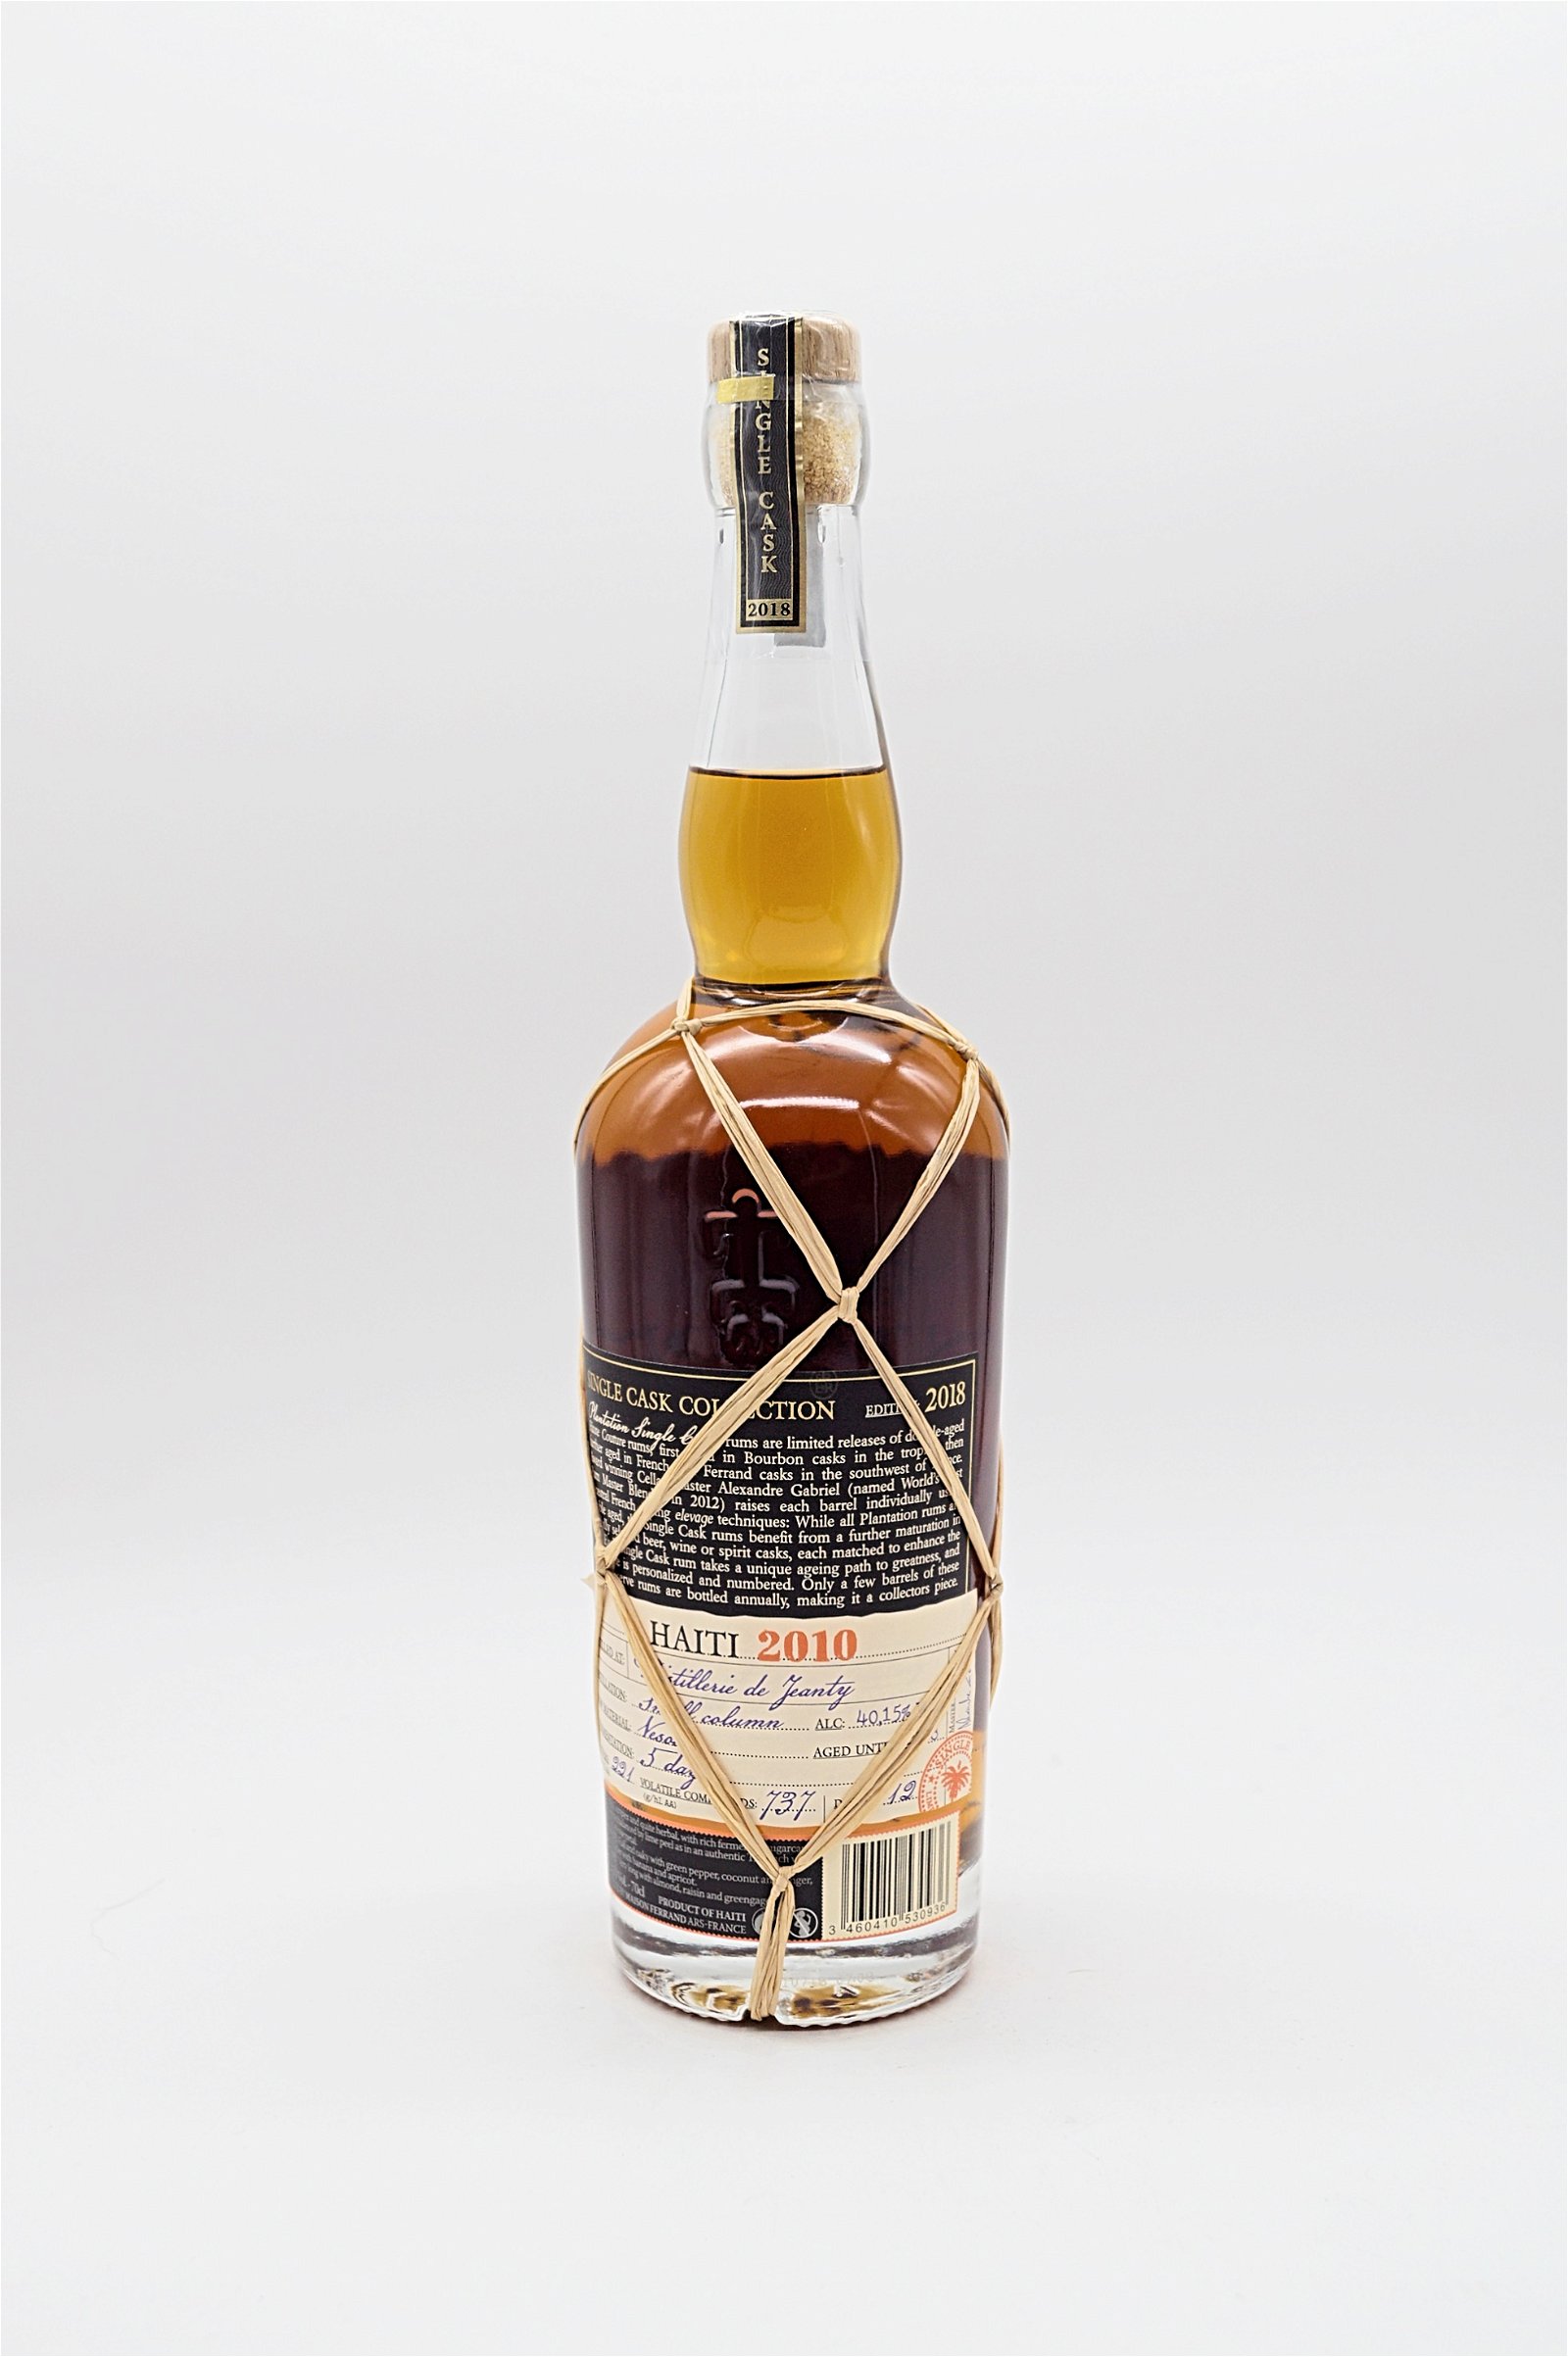 Plantation Rum Haiti 2010 Single Cask Collection Ferrand Cognac 10 Générations Finish